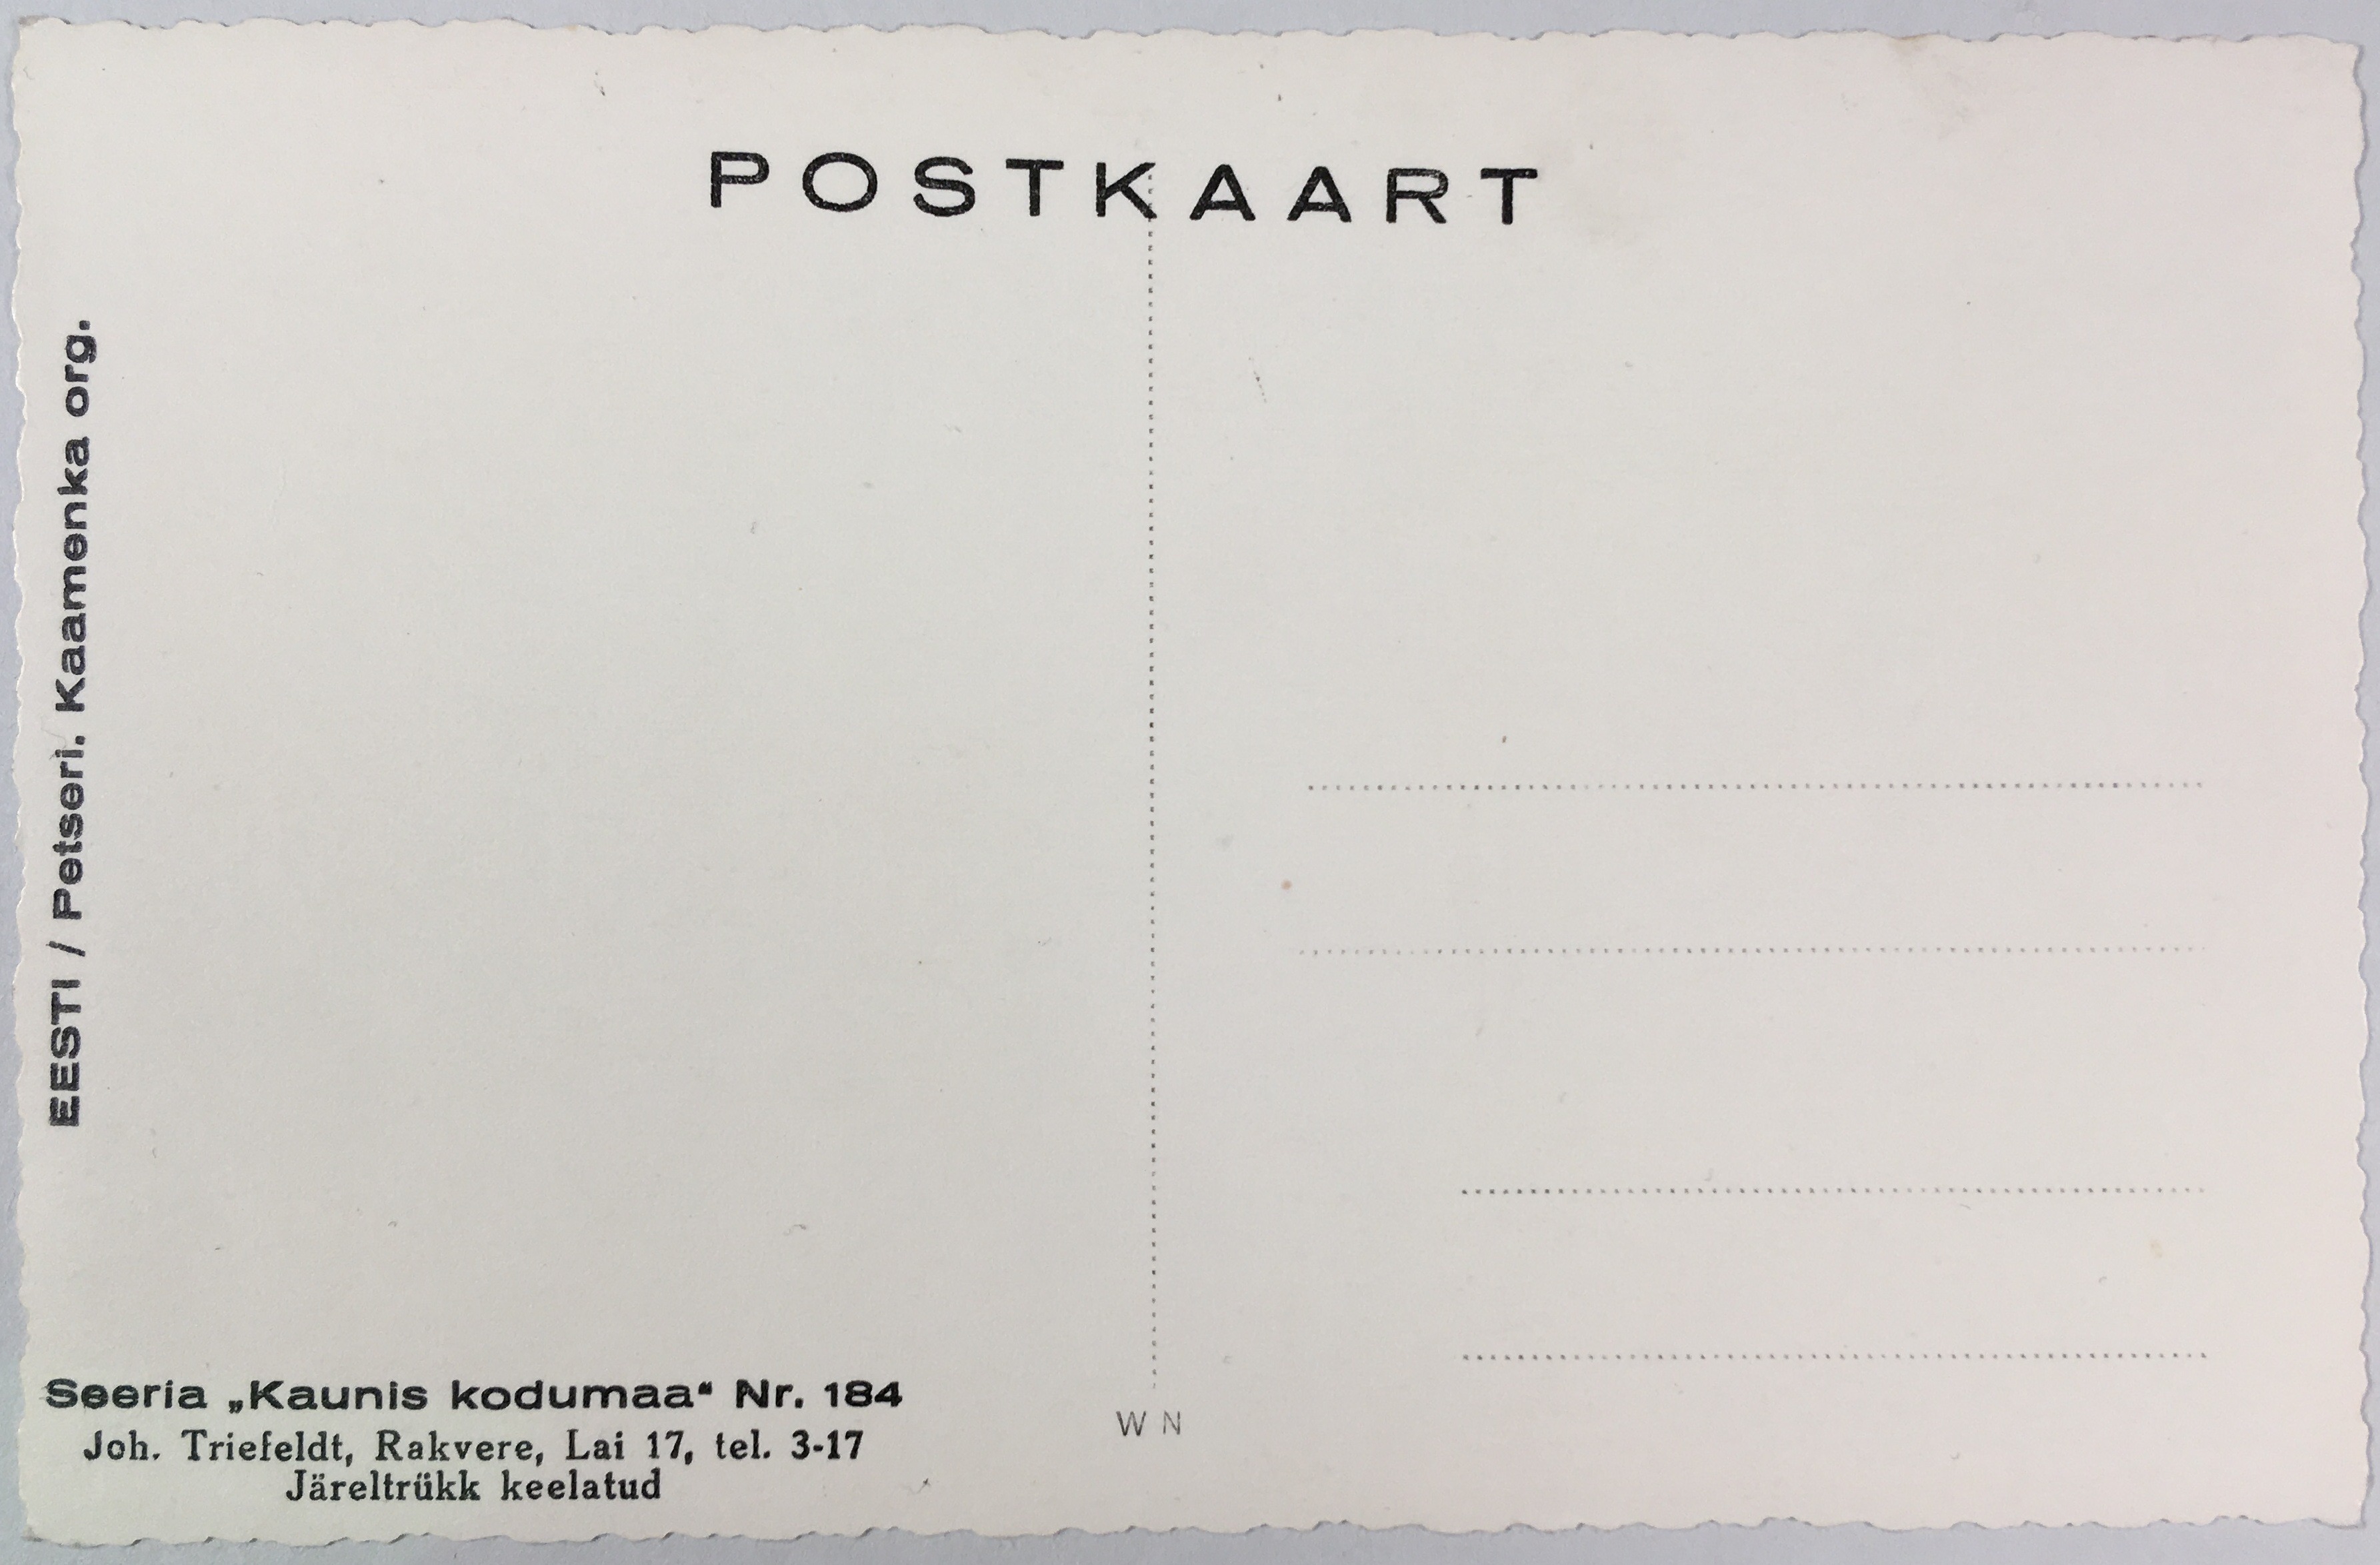 Fotopostkaart sarjast "Kaunis kodumaa" Nr. 184 (tagakülg) - Fotopostkaart Rene Viljati erakogust